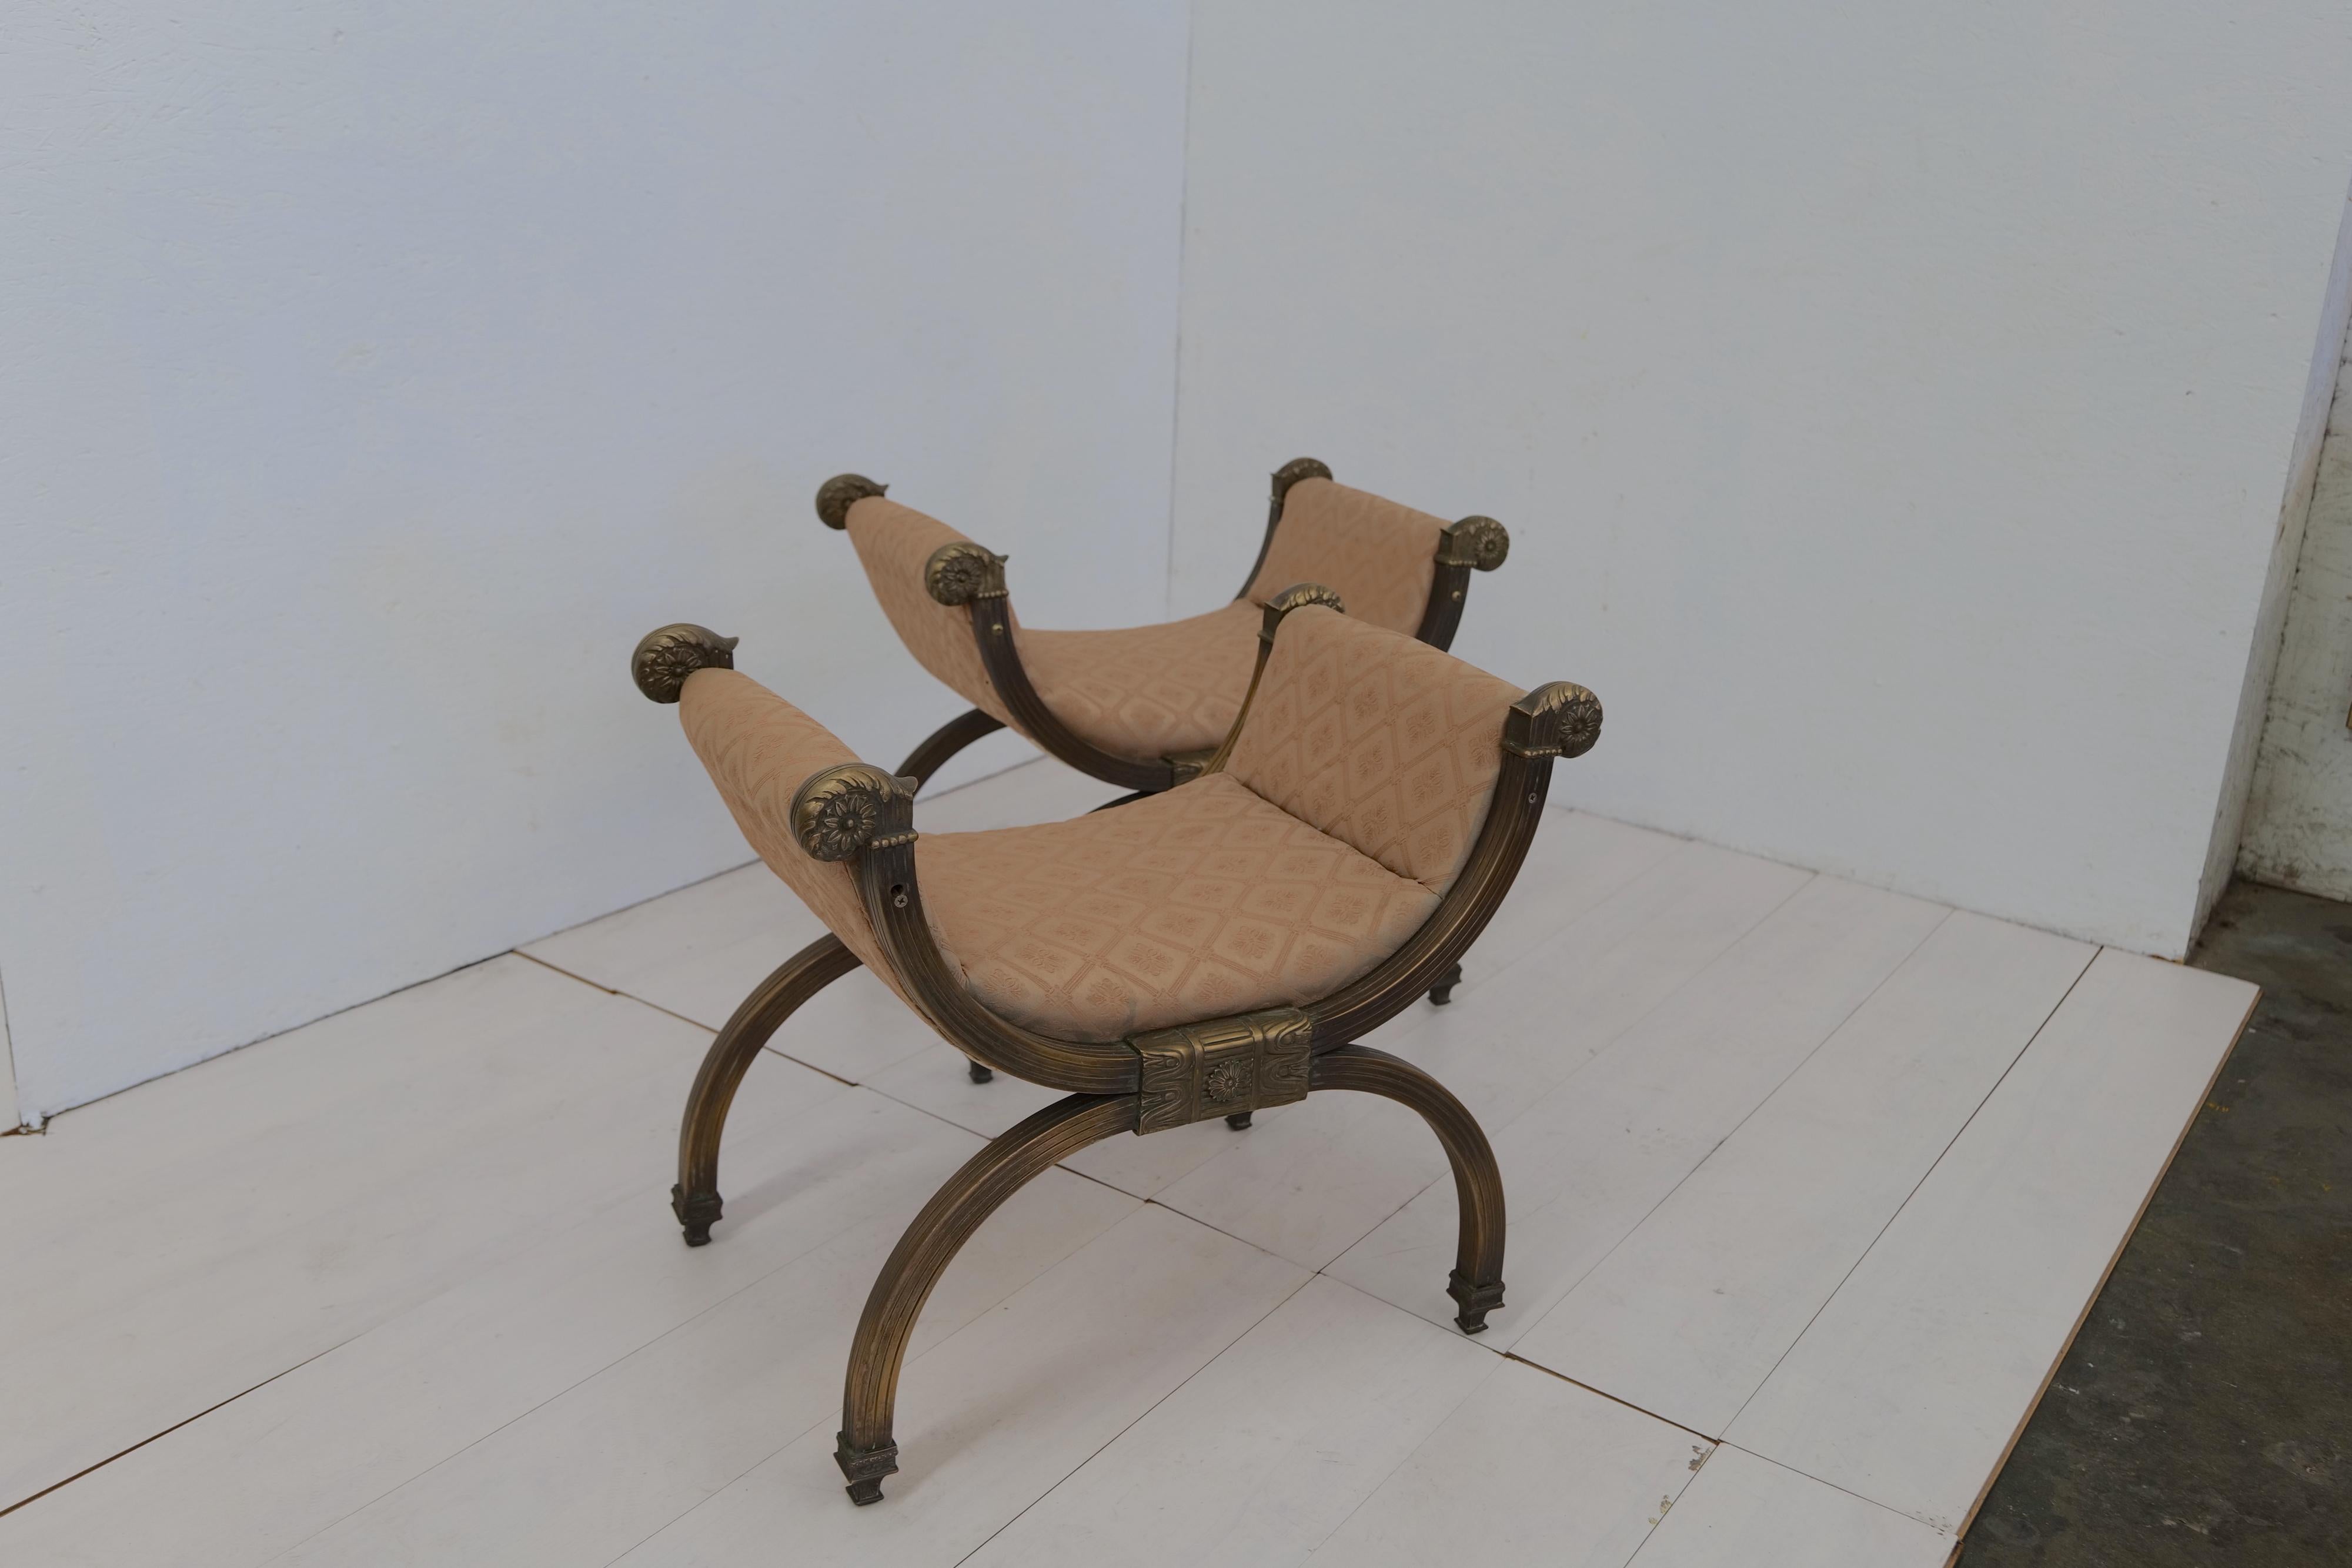 Das italienische Paar aus zwei Barocksesseln, entworfen von Carlo X, zeichnet sich durch eine auffallende und opulente Ästhetik aus. Diese Sessel haben eine Sitzfläche ohne Rückenlehne, was ein einzigartiges und offenes Design ermöglicht. Der